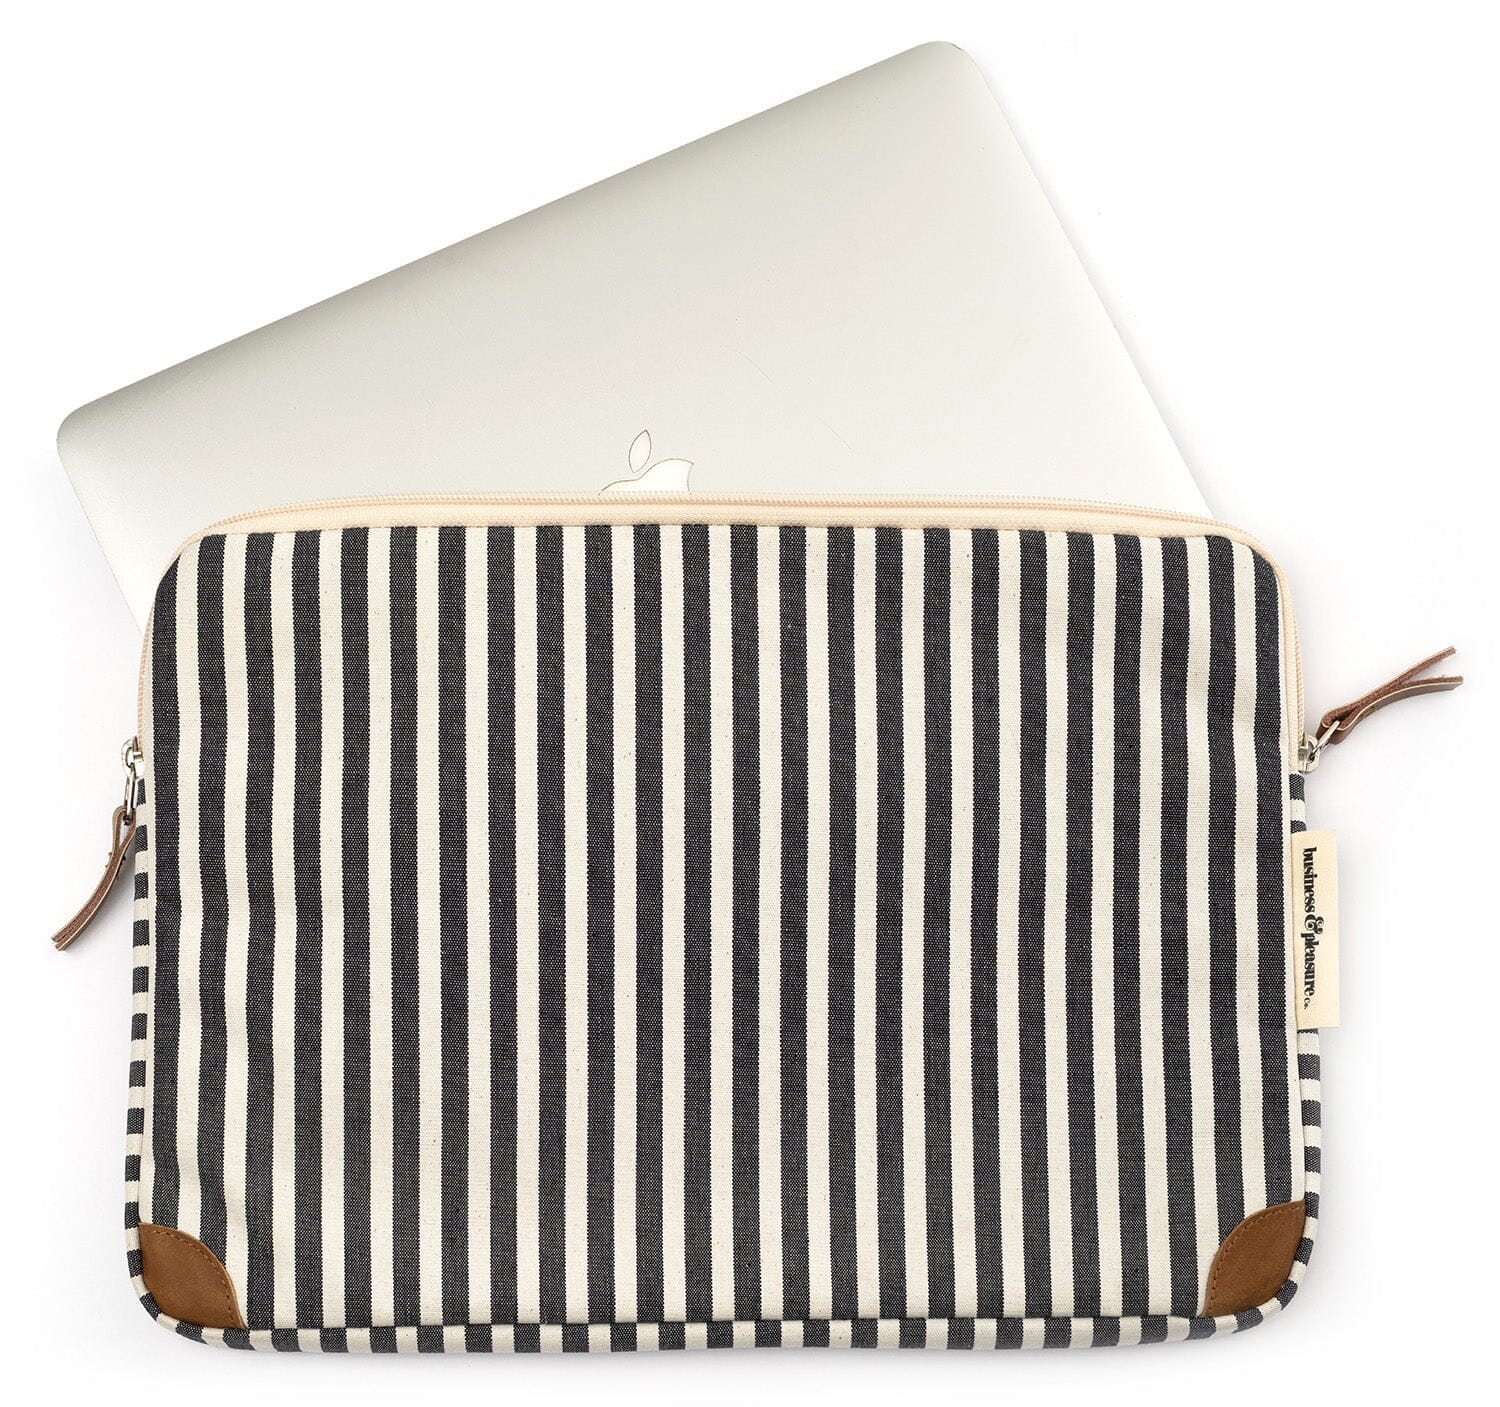 The Laptop Sleeve - Lauren's Navy Stripe